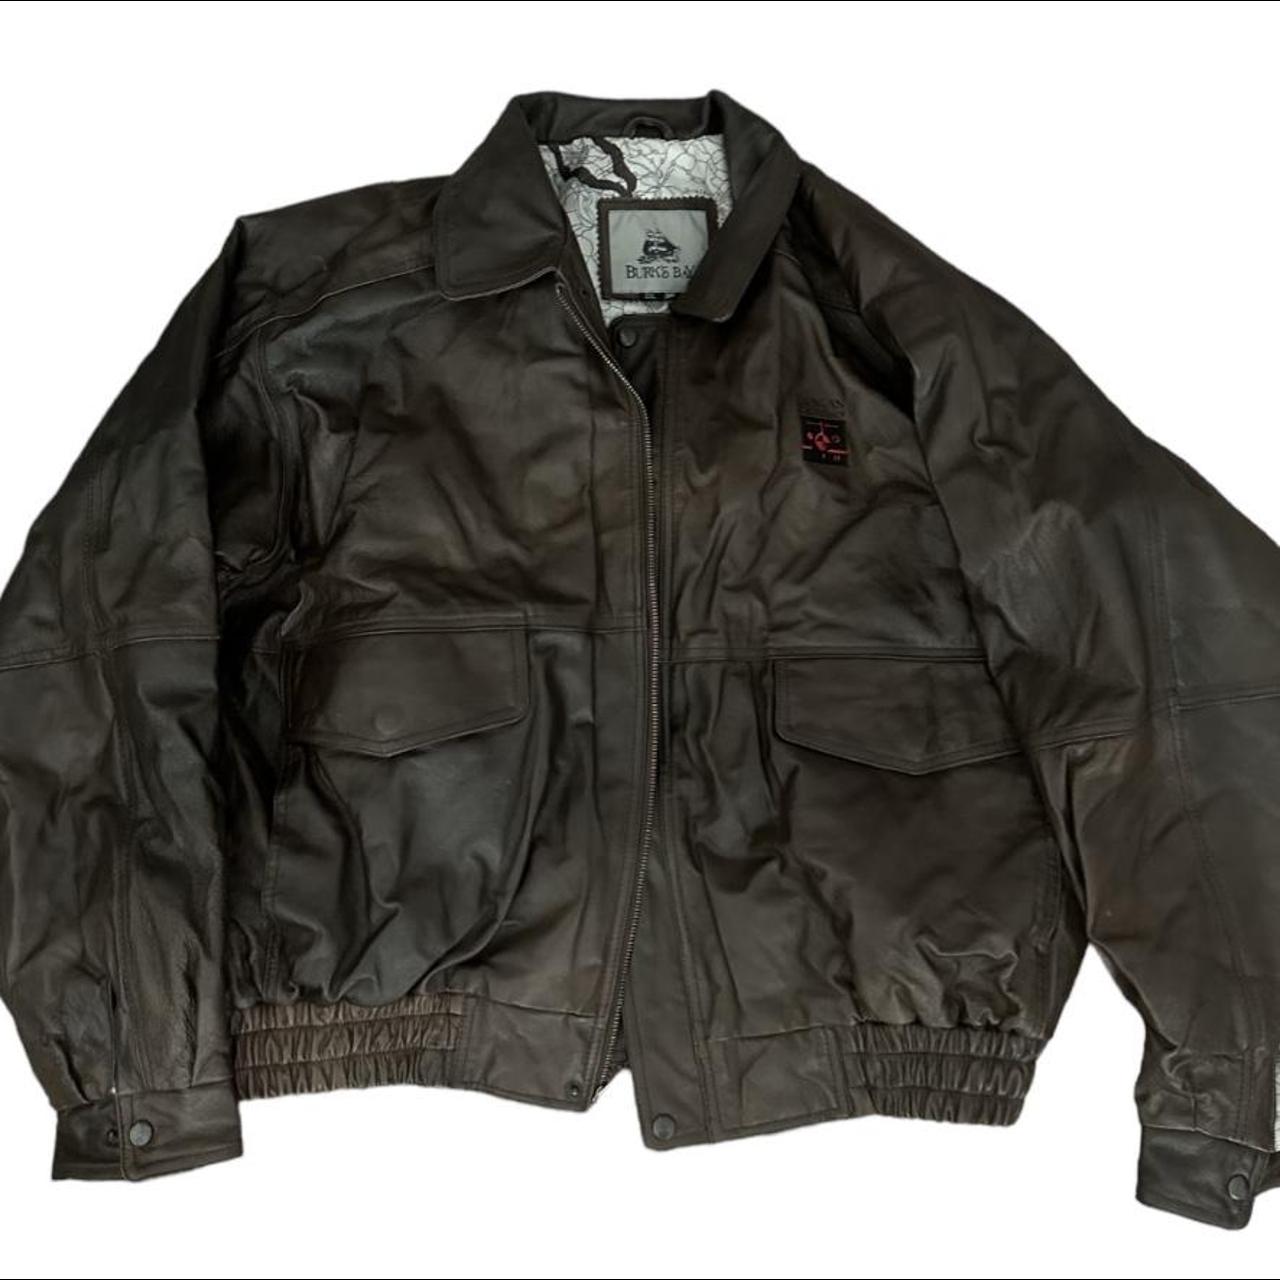 Vintage Brown leather jacket Has shoulder pads... - Depop